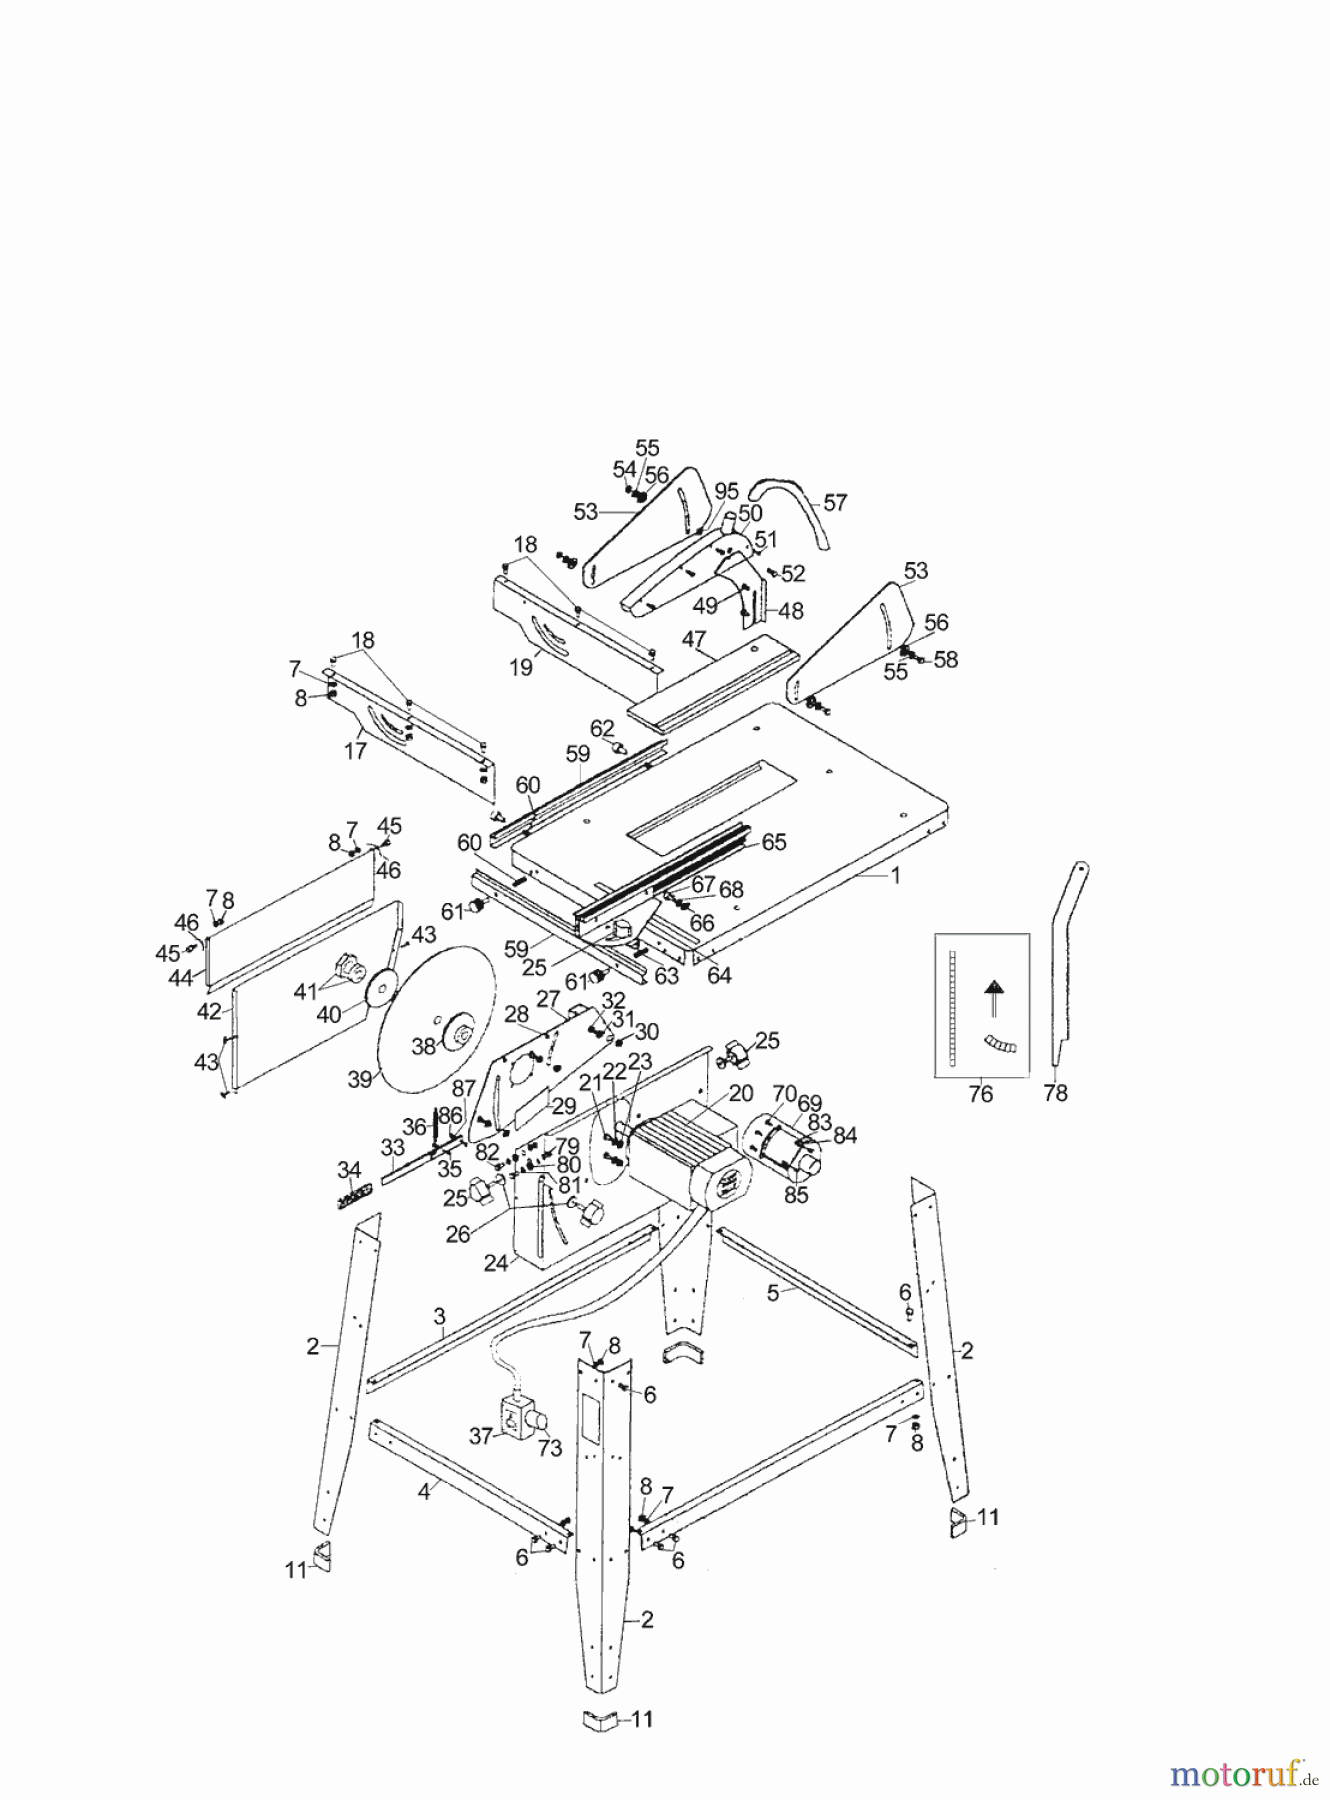  AL-KO Heimwerkertechnik Tischkreissägen TK 2800 Seite 1